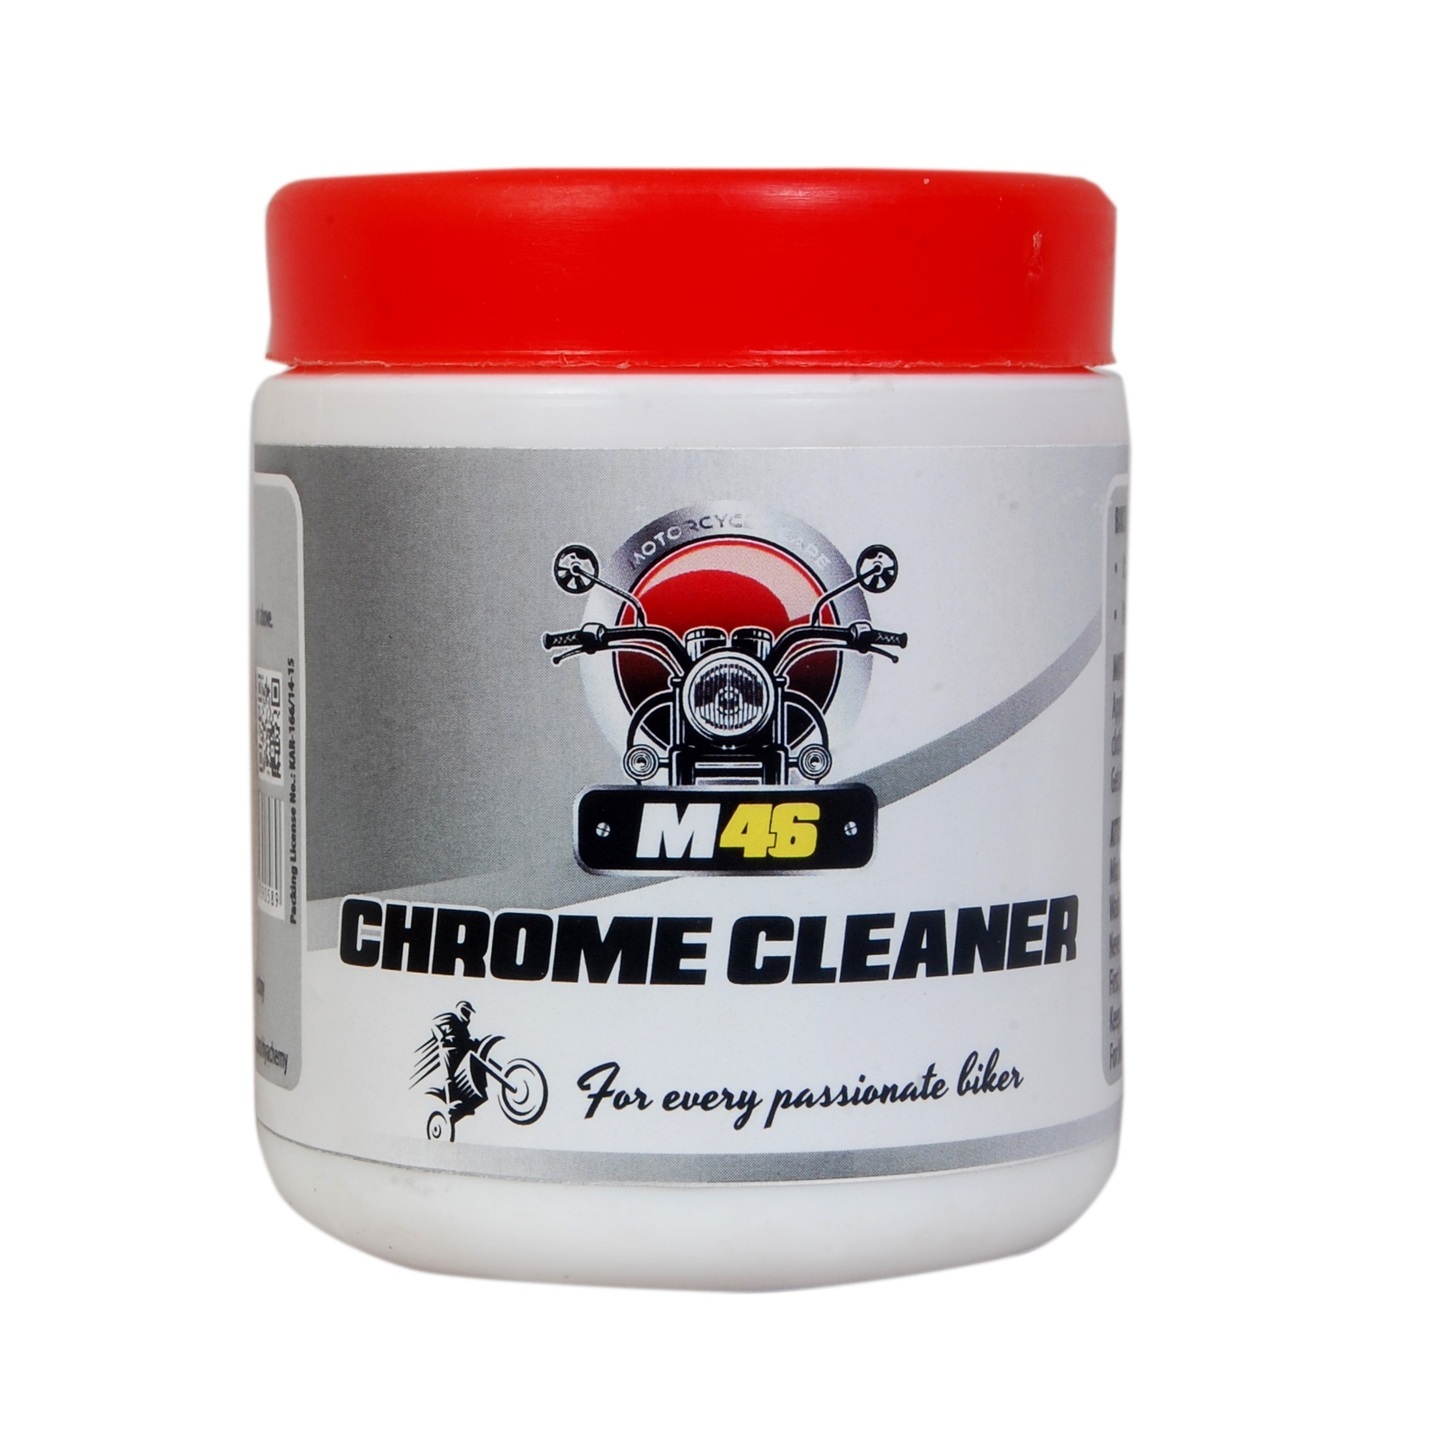 M46 Chrome Cleaner 100 g